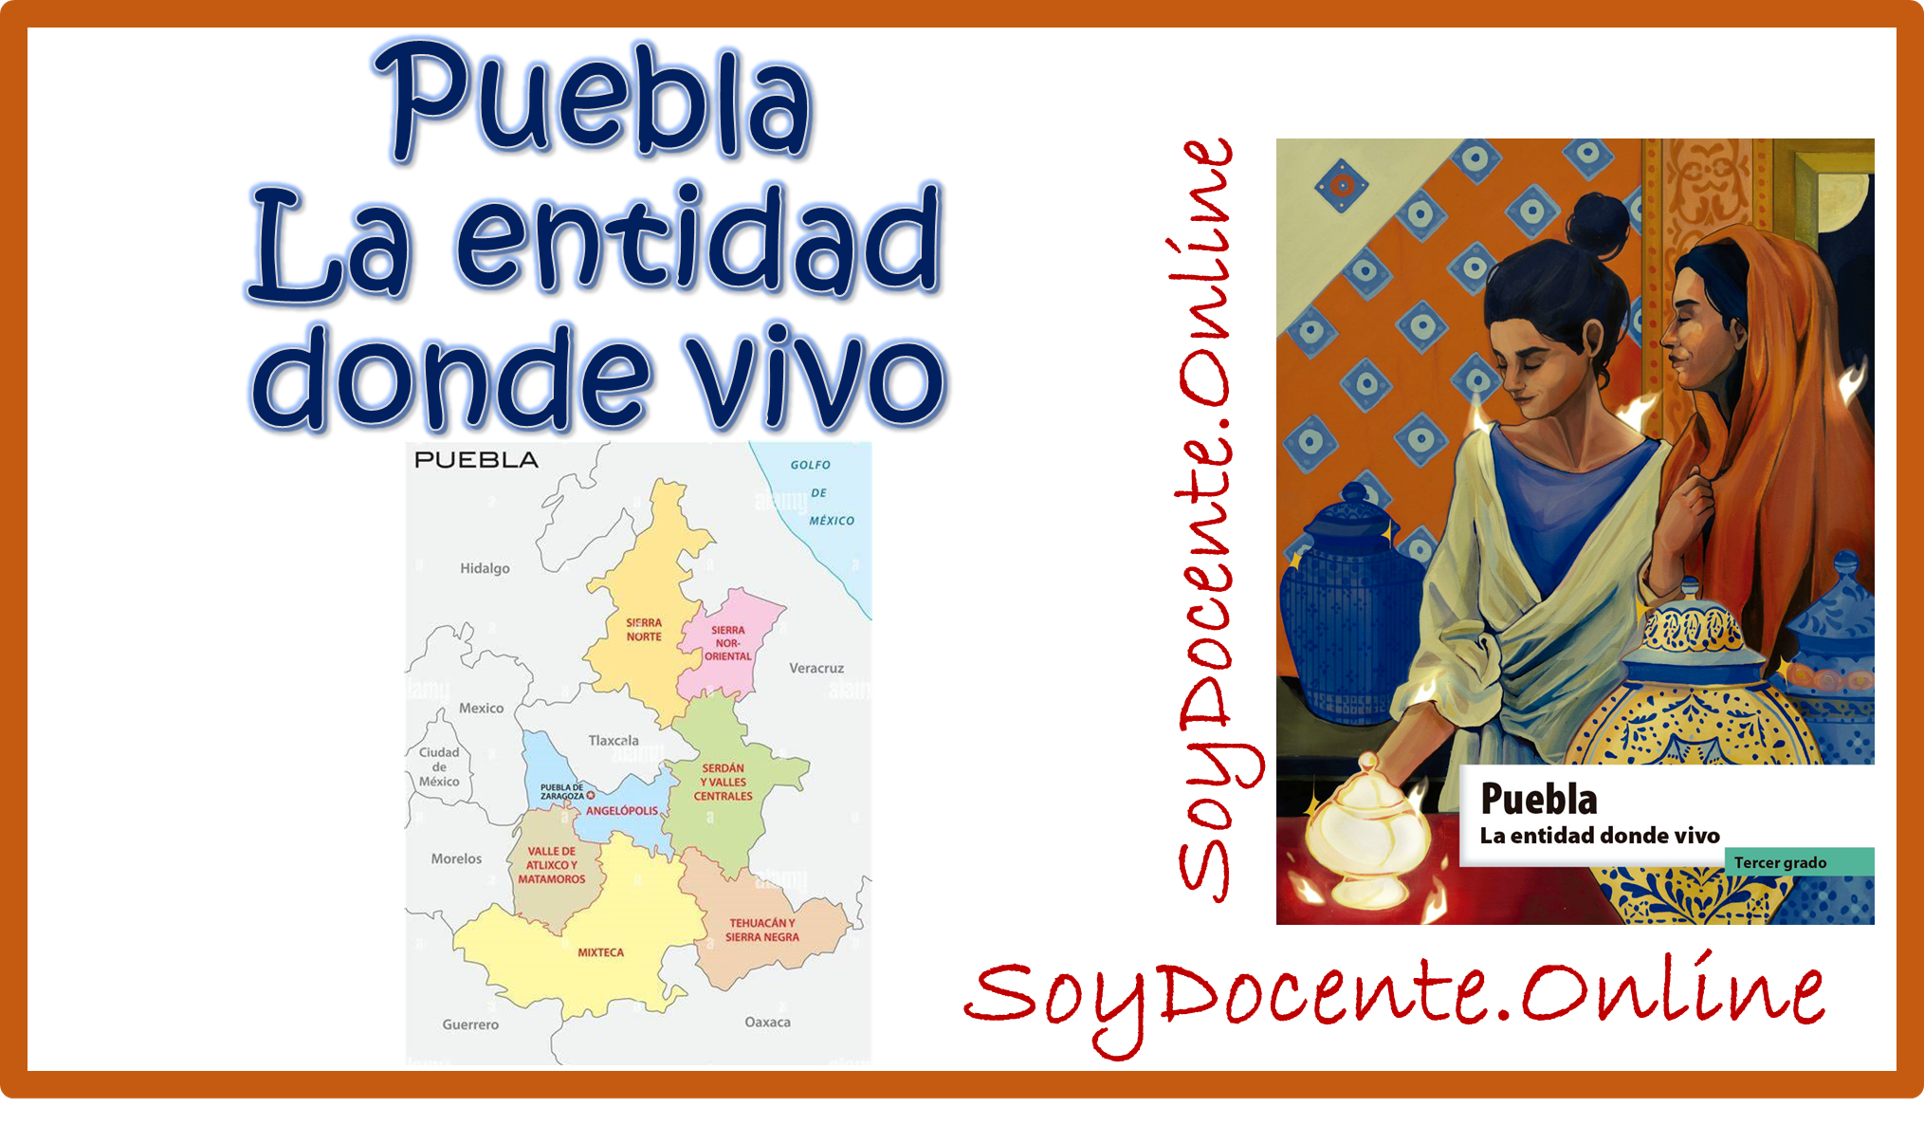 Libro Puebla. La entidad donde vivo de tercer grado de Primaria Descarga en PDF, elaborado por la SEP, distribuido por la CONALITEG.